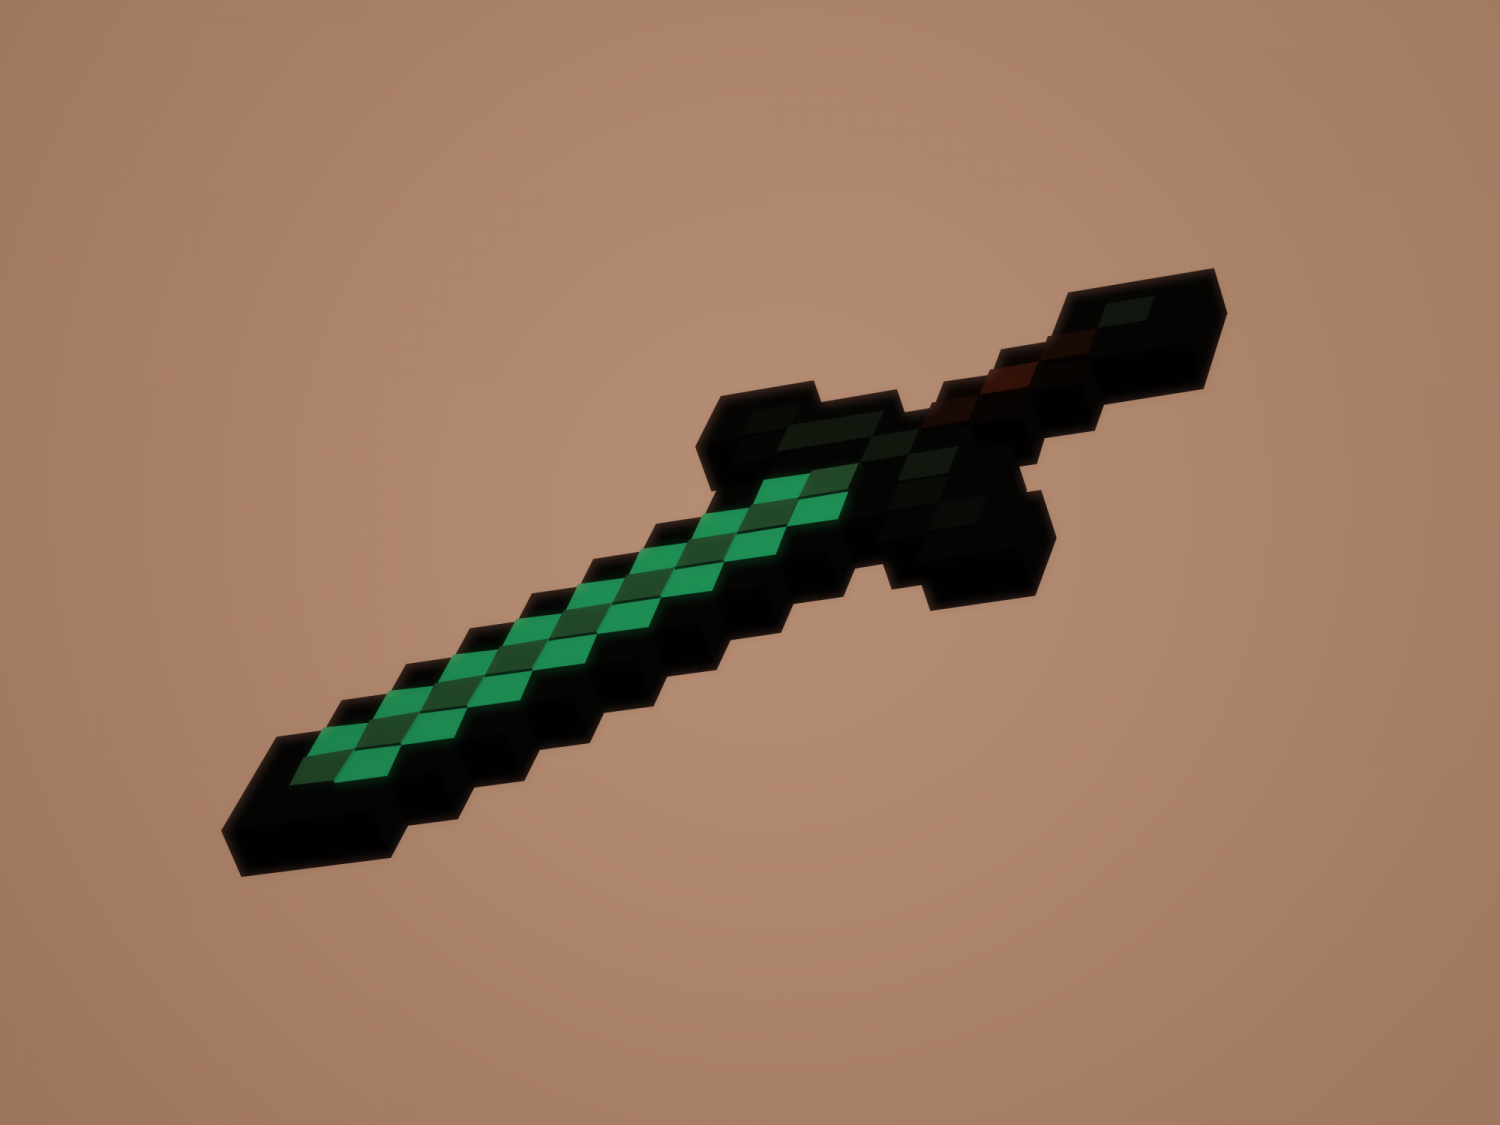 Minecraft Dark Diamond Sword FREE 3D Model Free 3D model free 3D